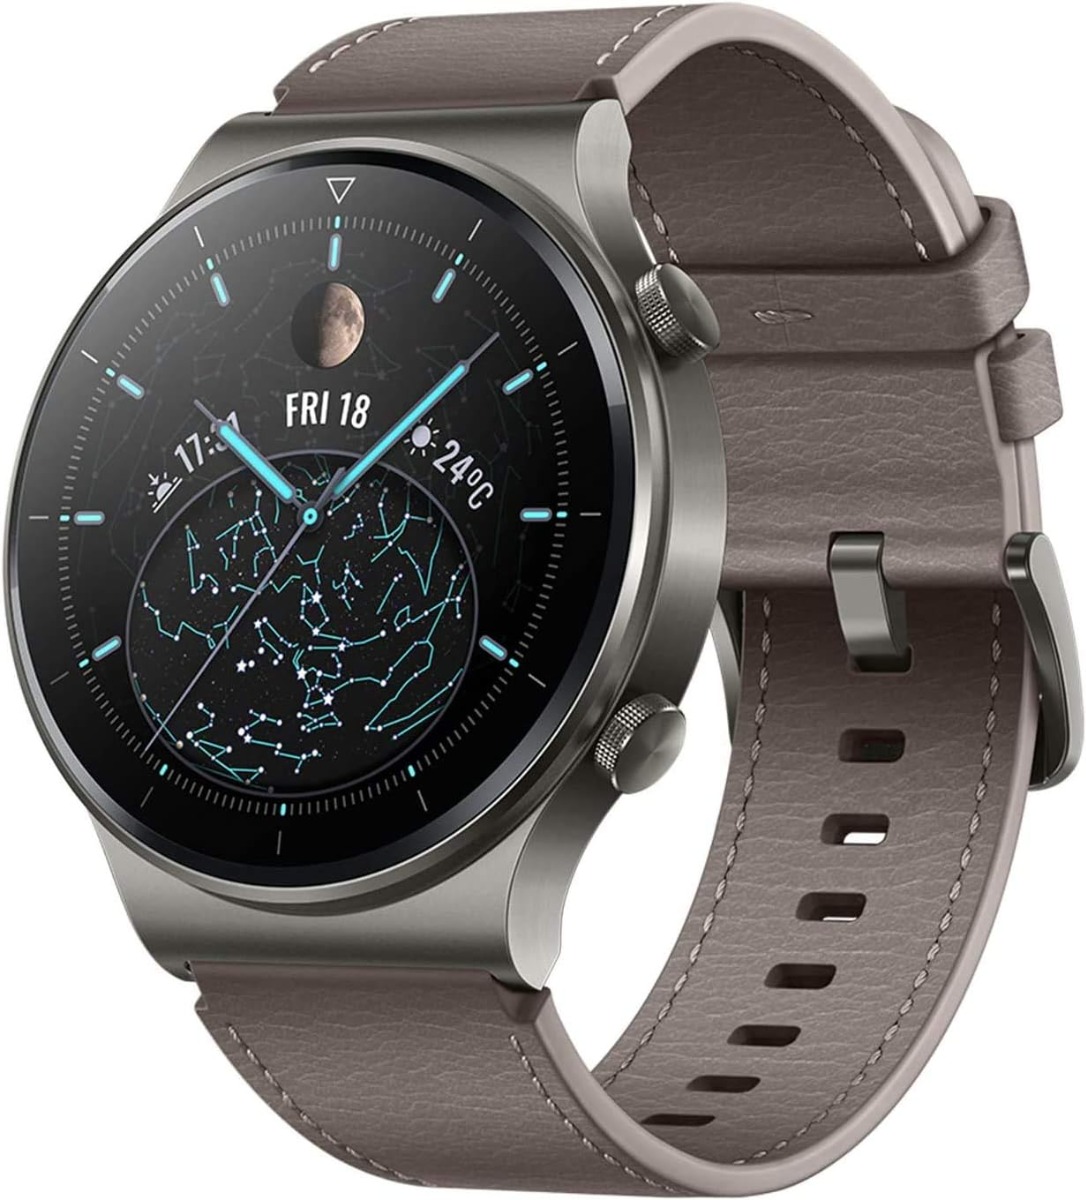 HUAWEI Watch GT 2 Pro Smart Watch - Nebula Gray